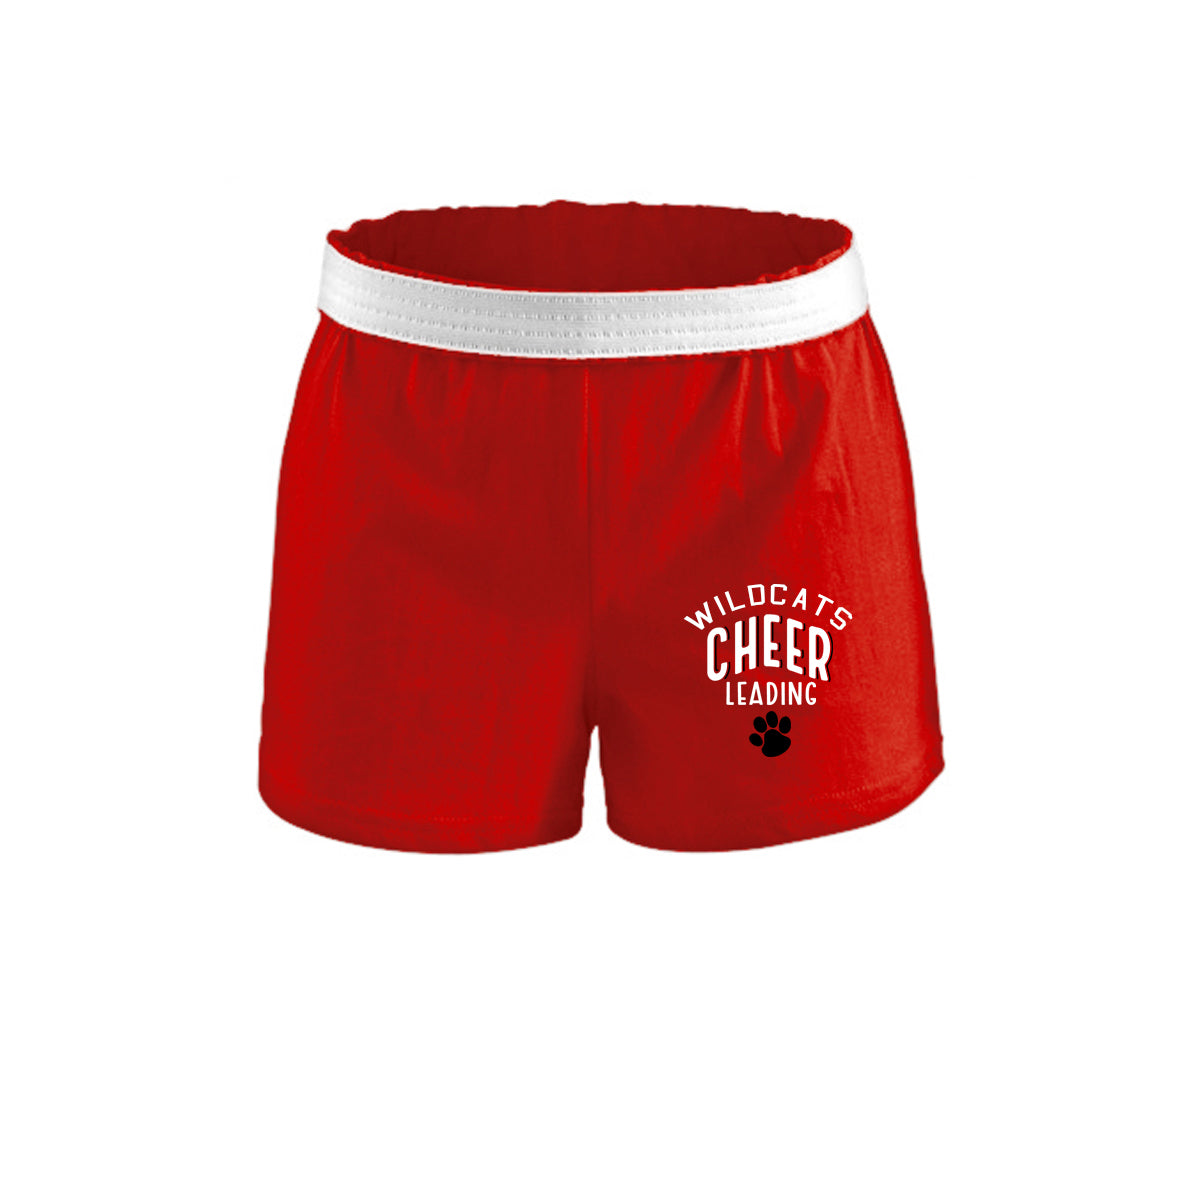 Wildcats Cheer Design 5 Shorts